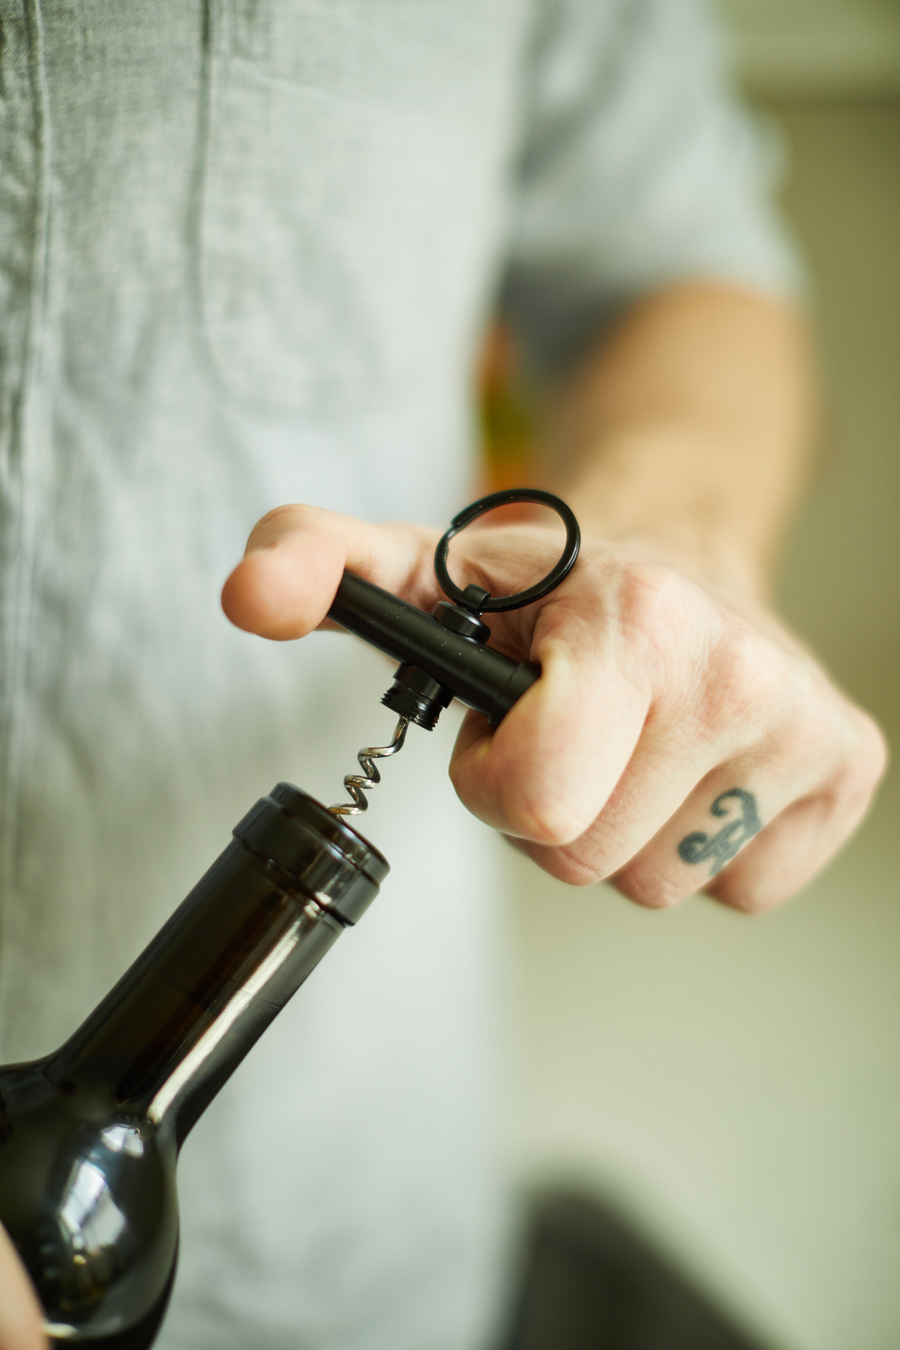 Keychain corkscrew in use.